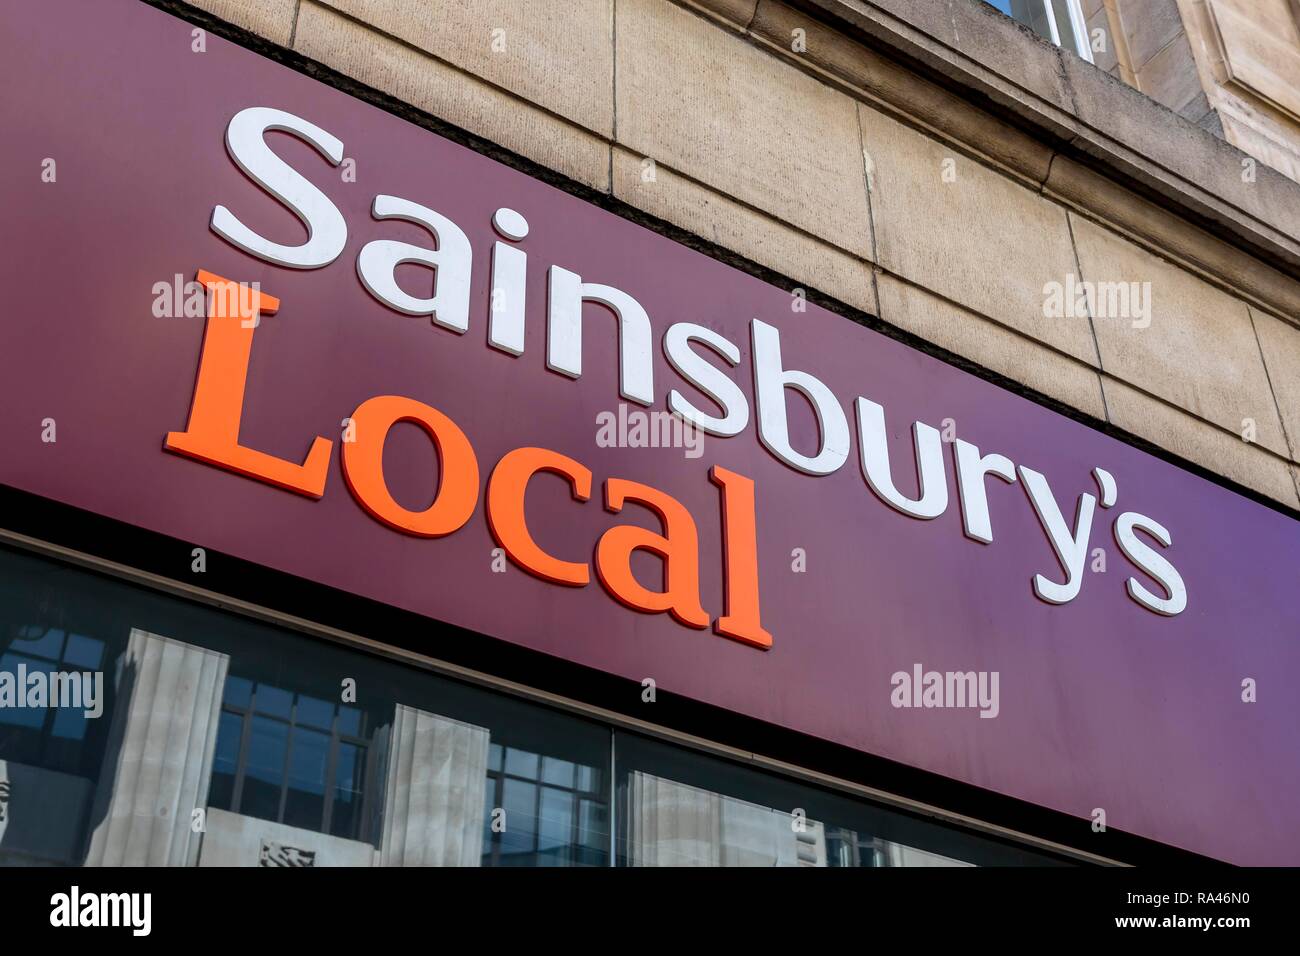 La cadena de supermercados Sainsbury's, el logotipo en la fachada, Londres, Reino Unido Foto de stock